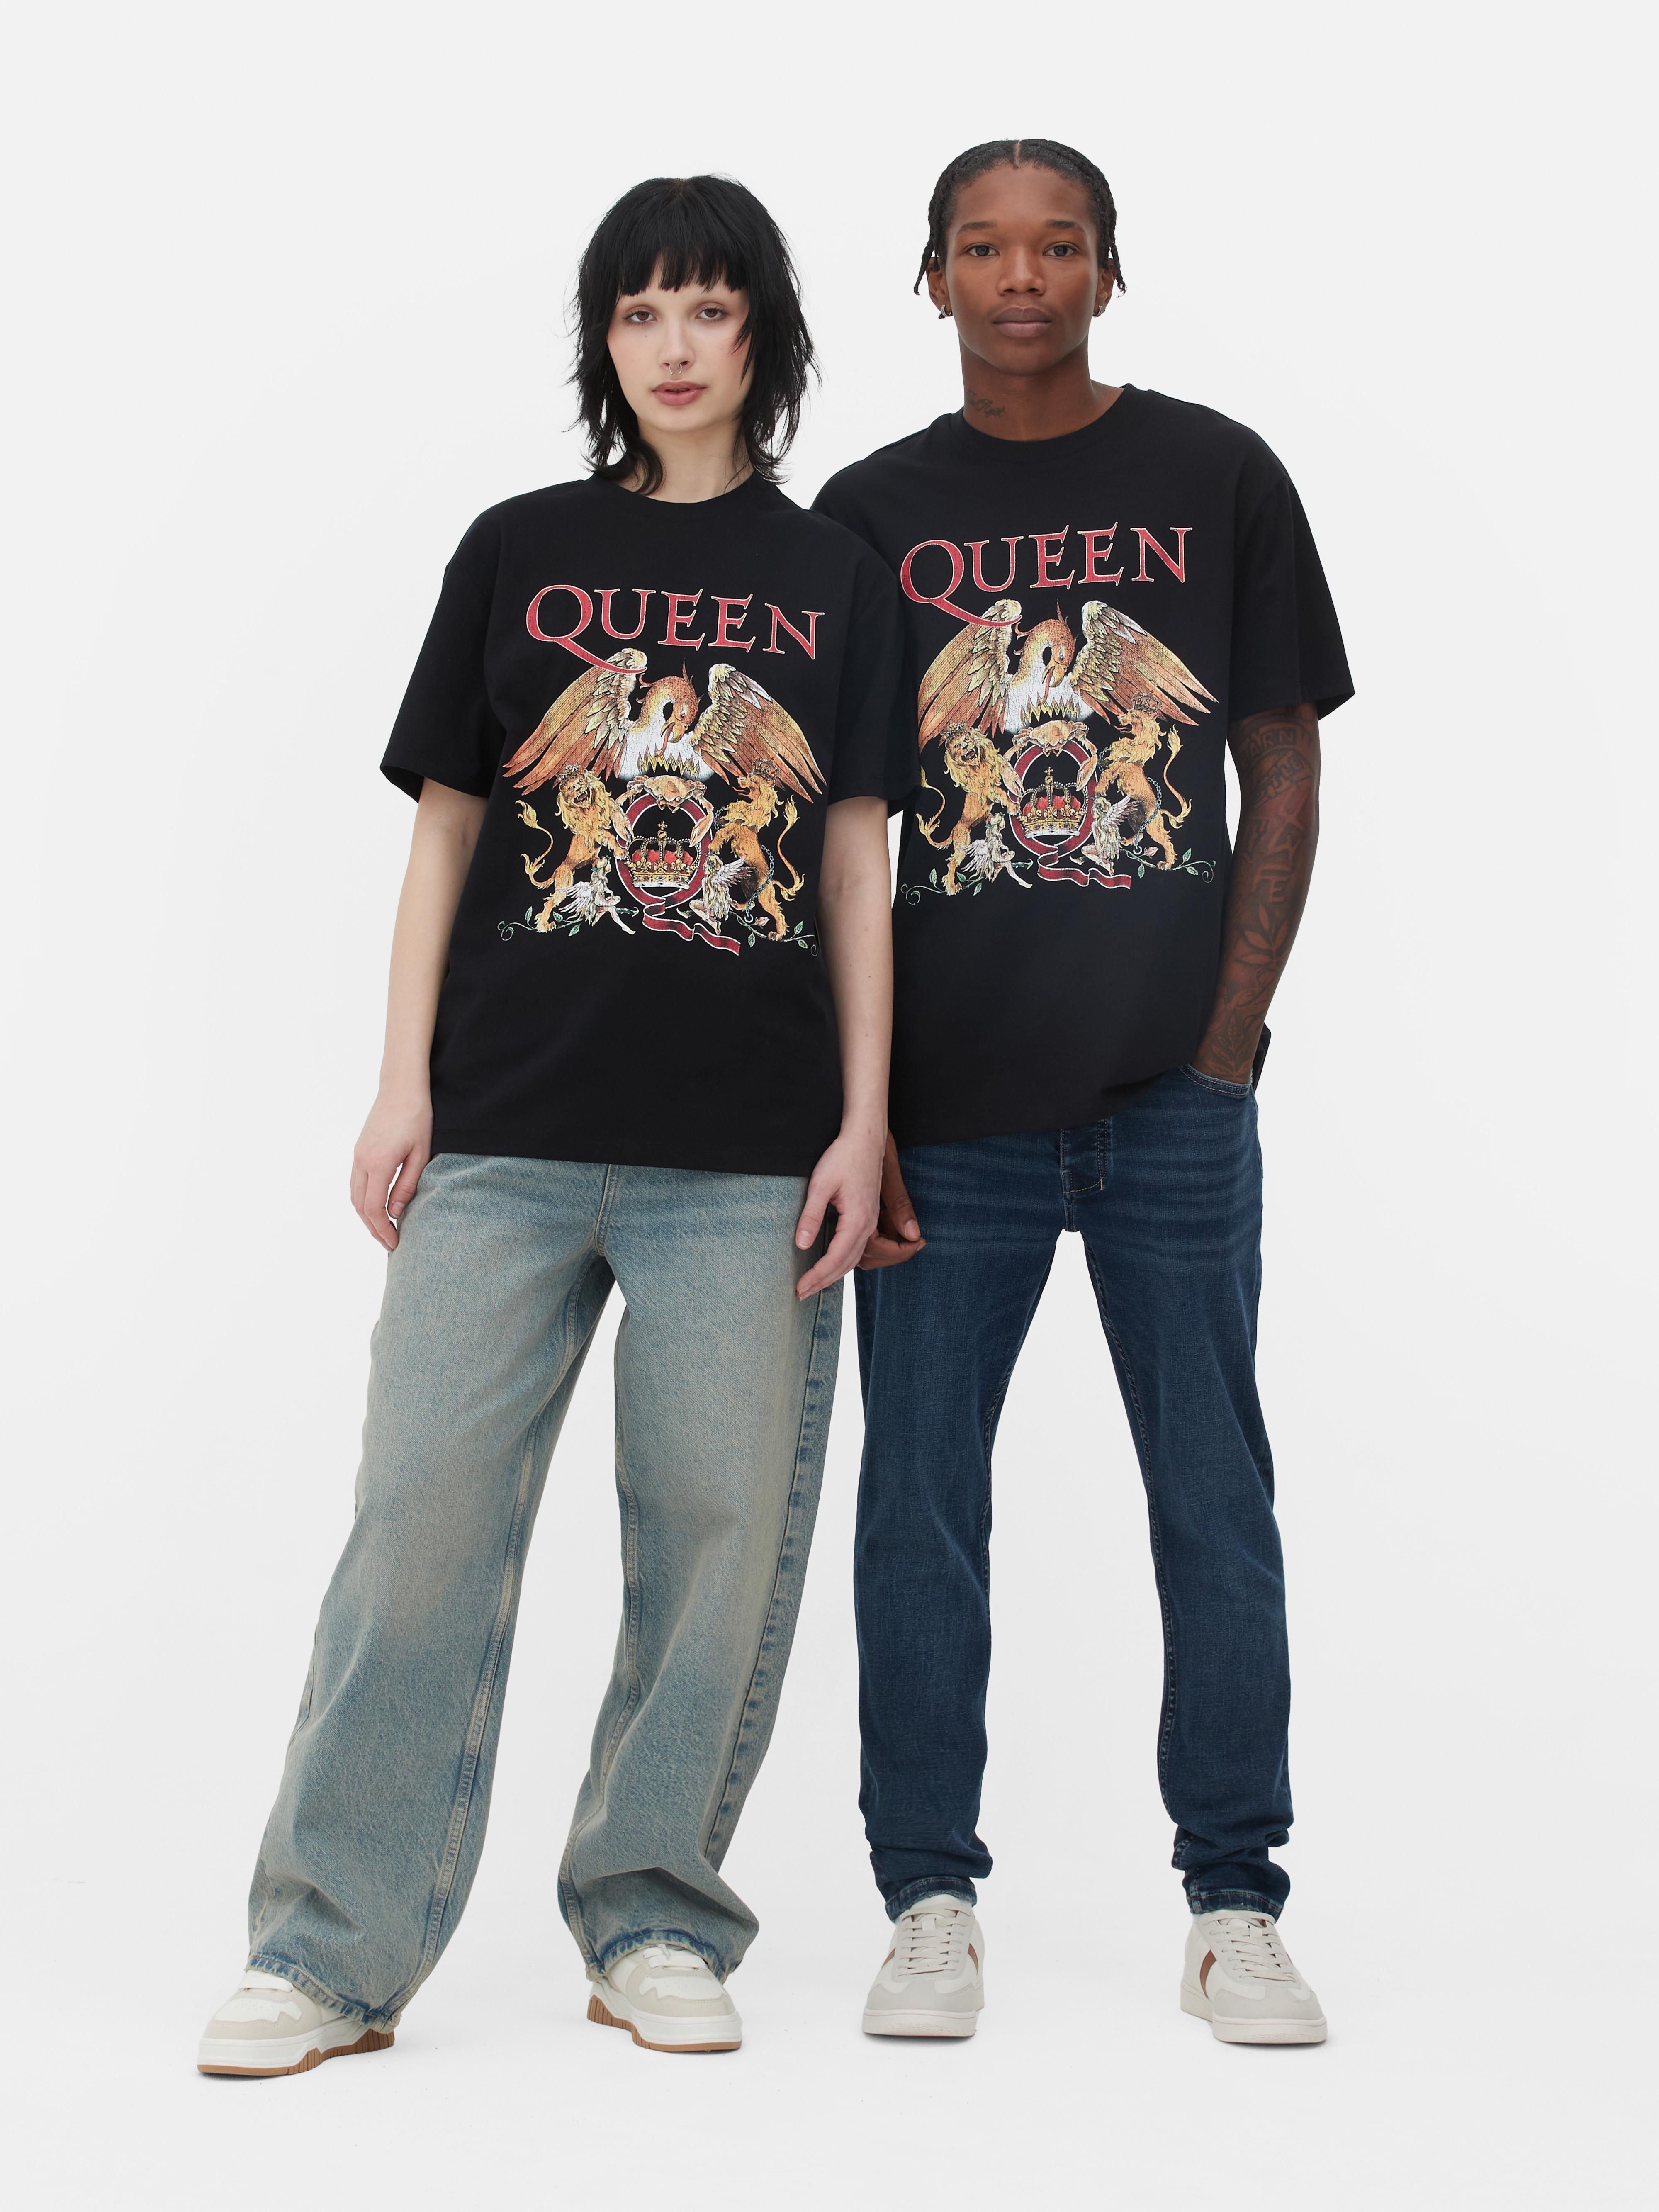 Band-T-shirt Queen